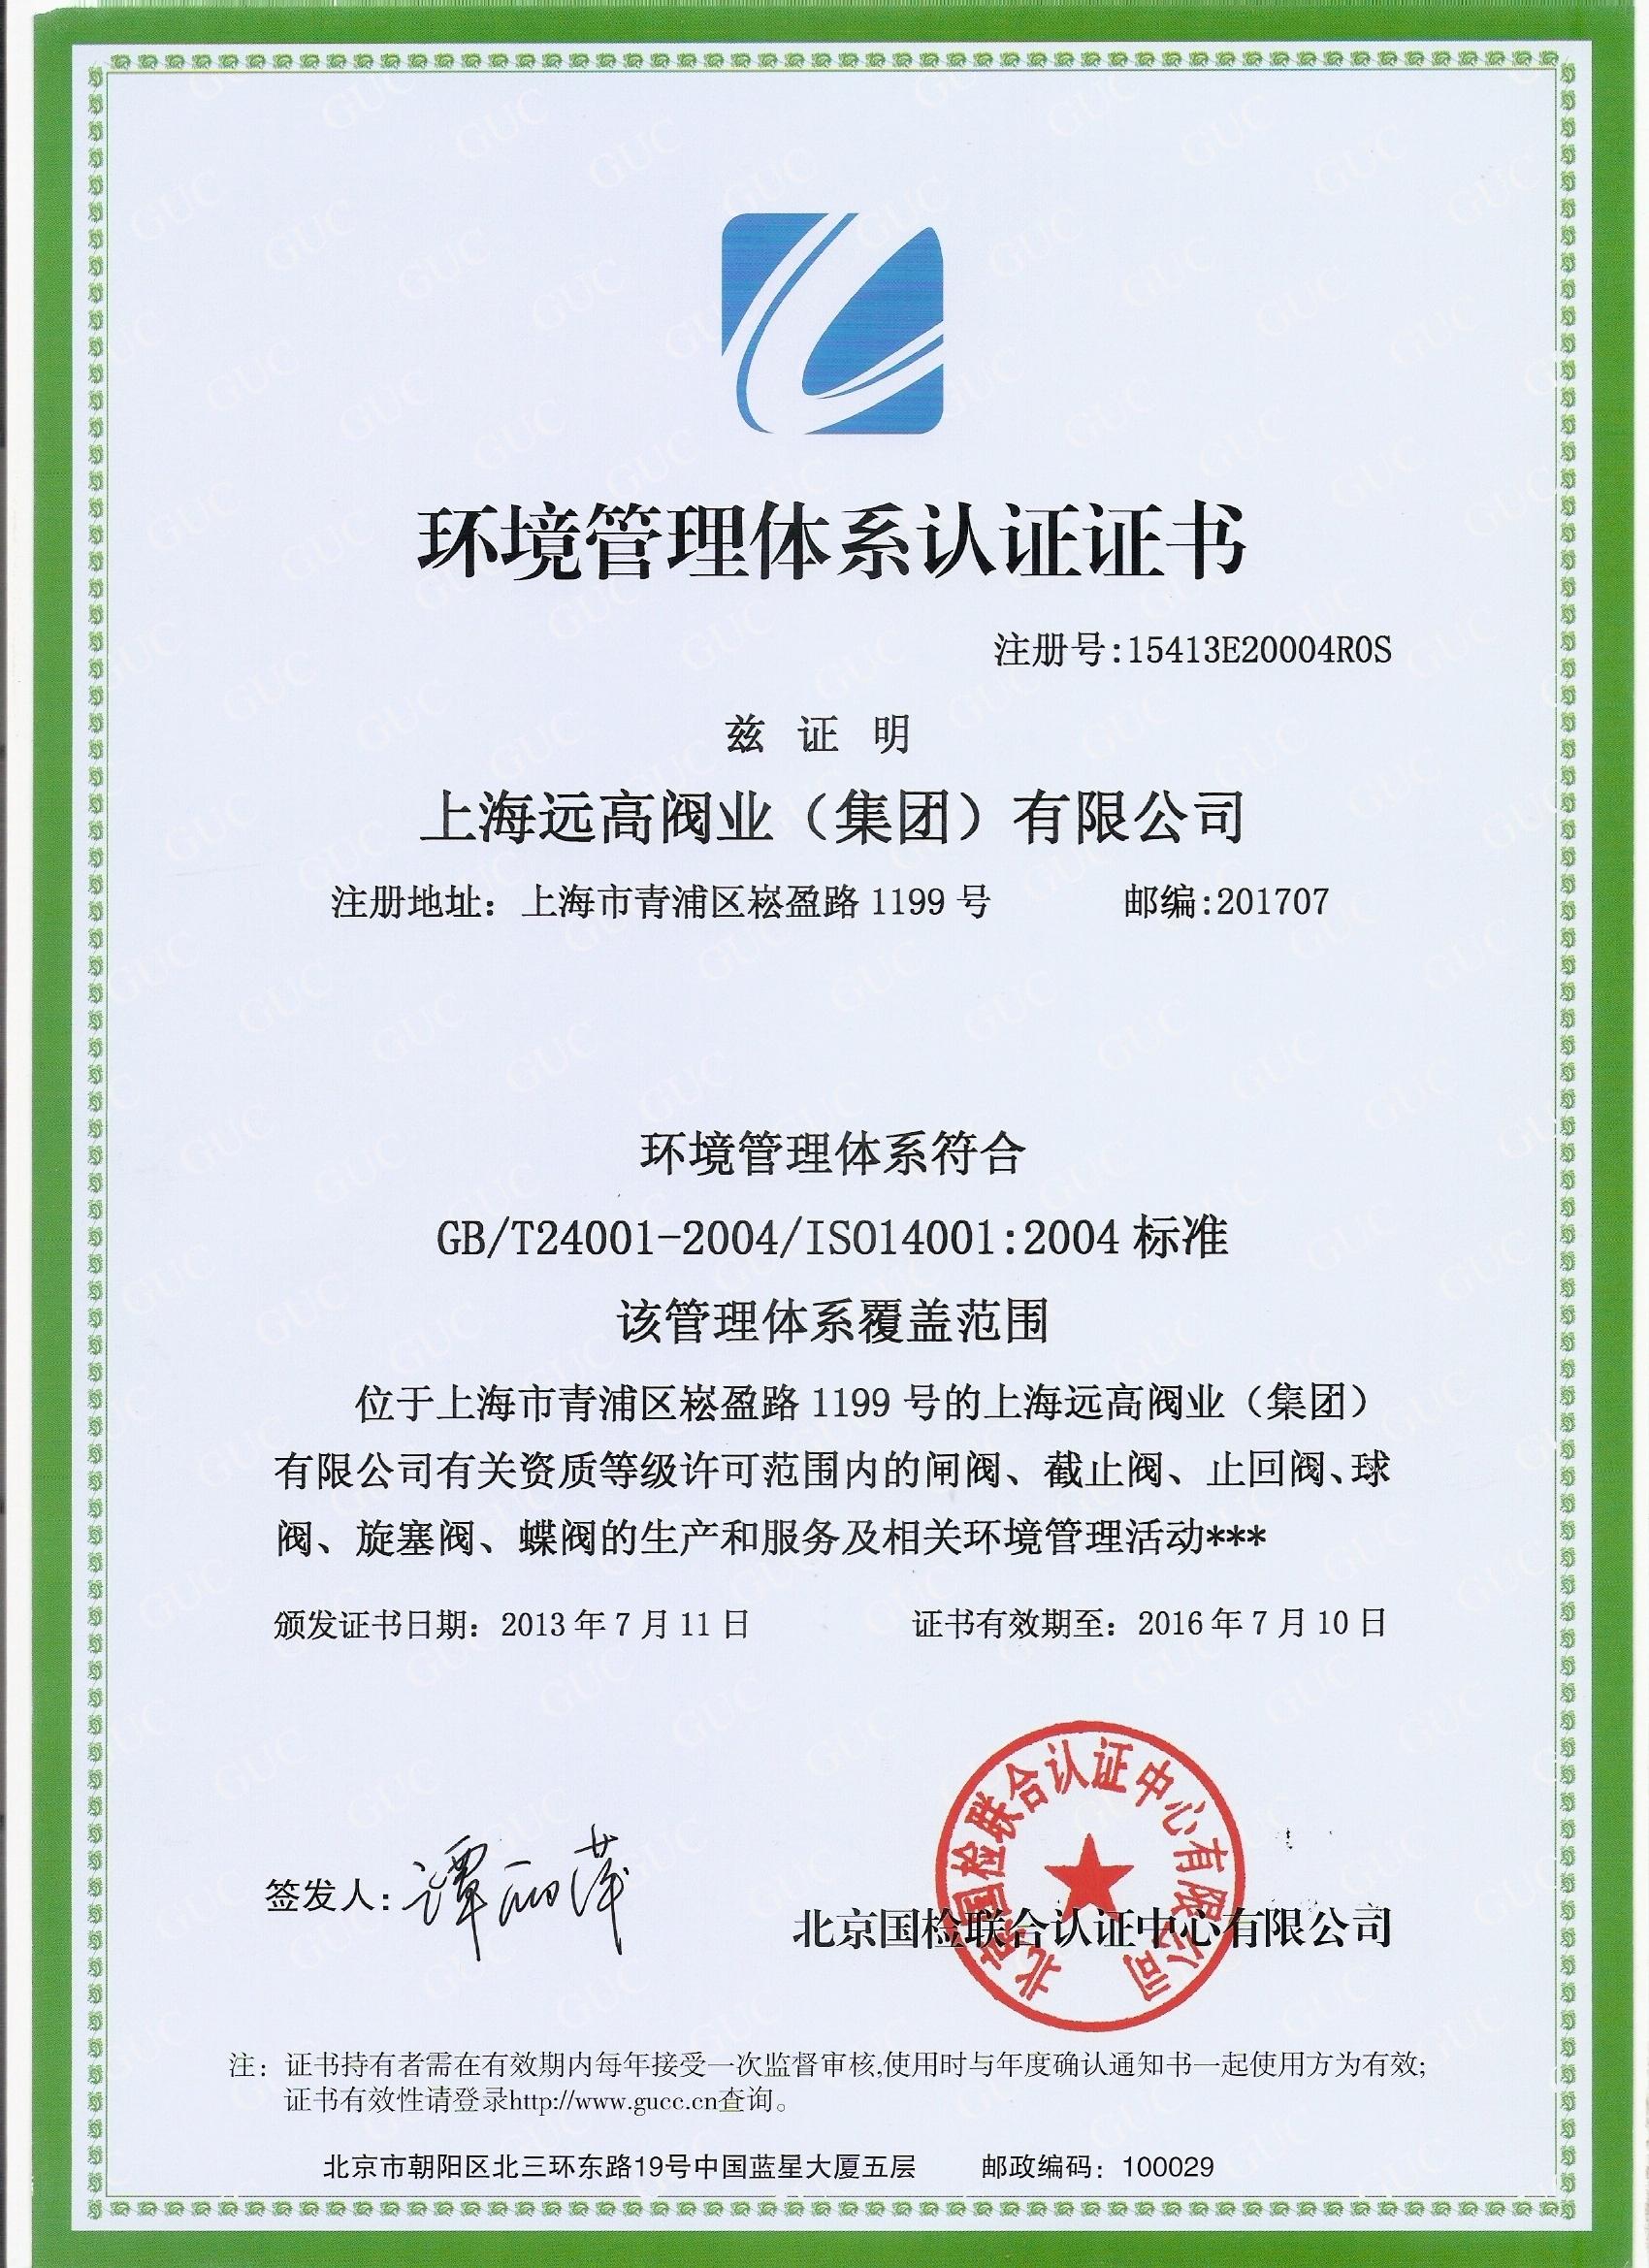 环境认证证书(中文)